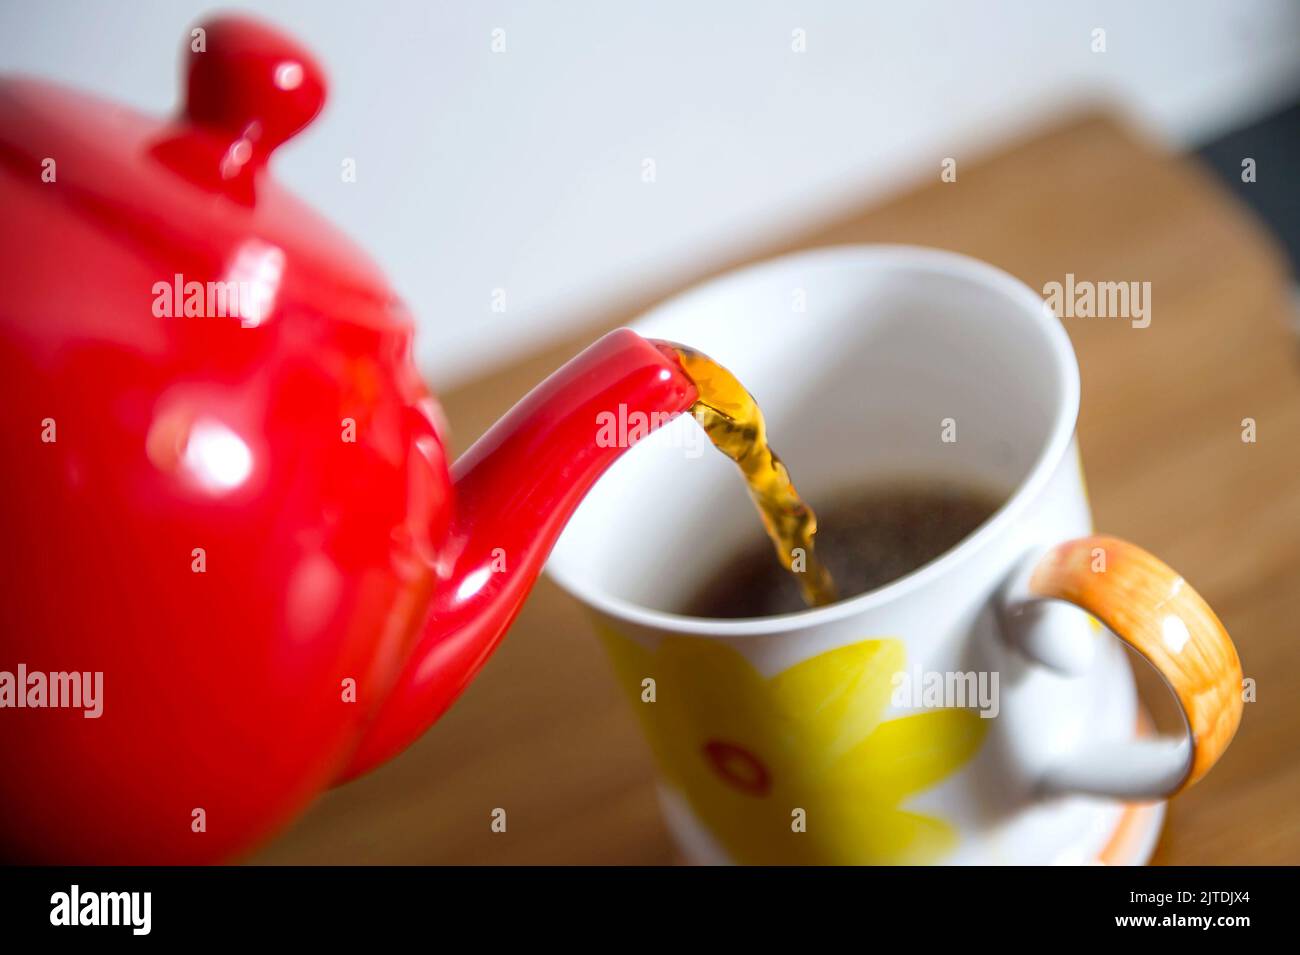 Aktenfoto vom 29/03/16 von Tee, der aus einer Teekannen gegossen wurde. Das Trinken von Tee könnte mit einem geringeren Sterberisiko in Verbindung gebracht werden, so eine Studie. Ausgabedatum: Dienstag, 30. August 2022. Stockfoto